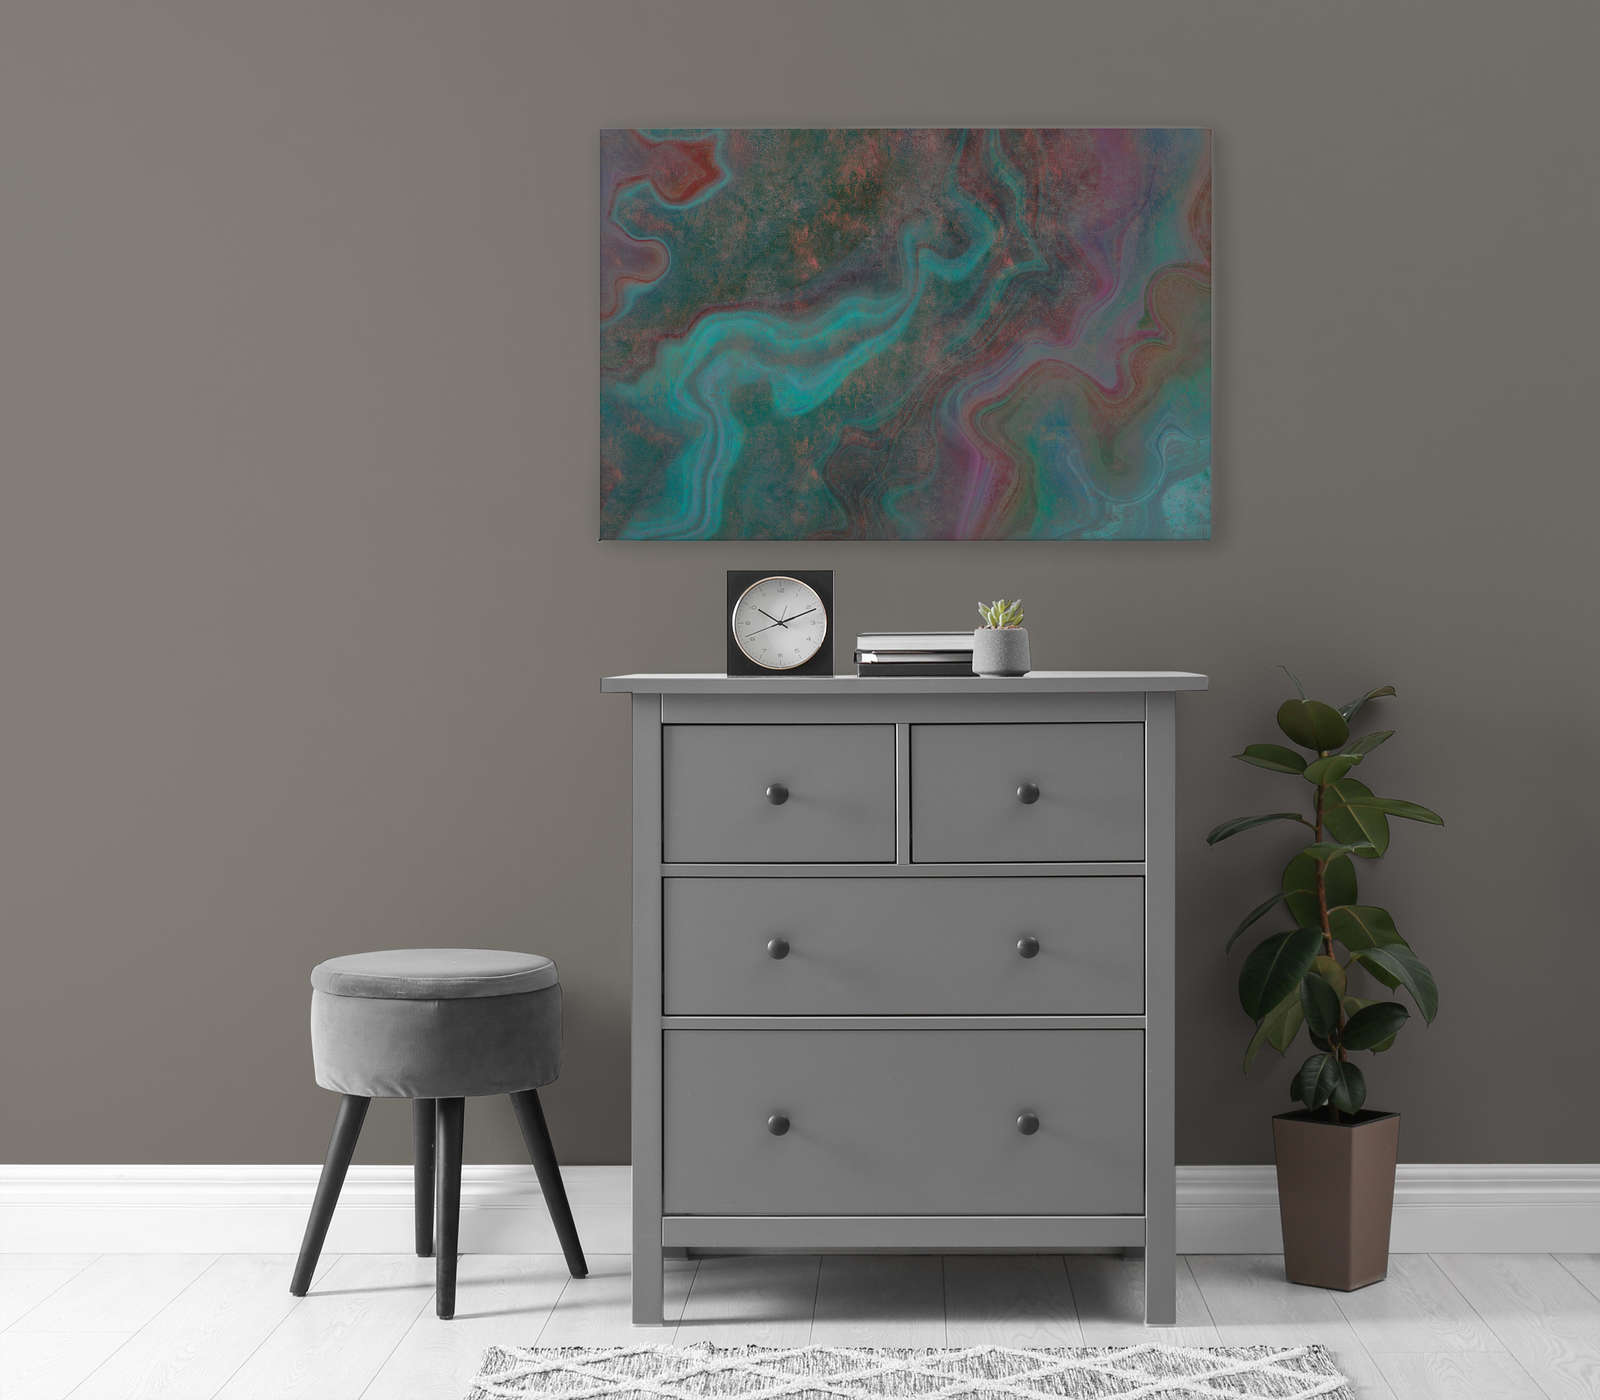             Marble 3 - Tableau sur toile avec structure rayée en aspect marbre coloré pour mettre en valeur - 0,90 m x 0,60 m
        